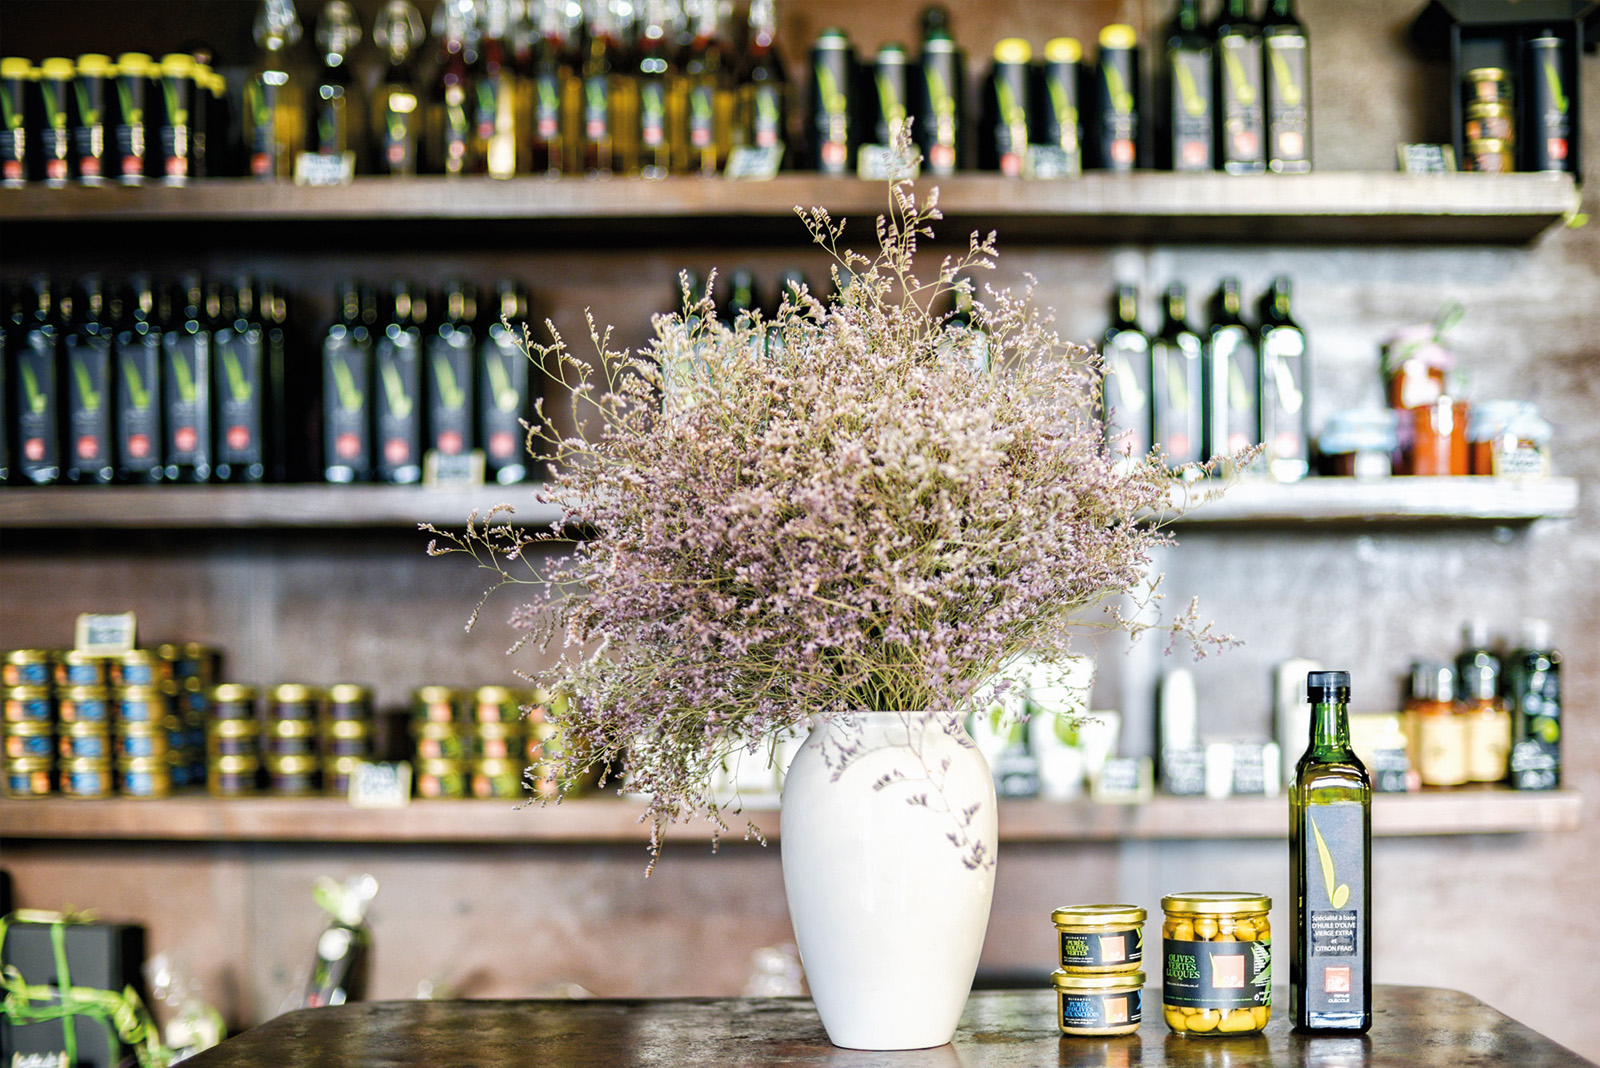 Vente en boutique d'huile d'olive à Gignac